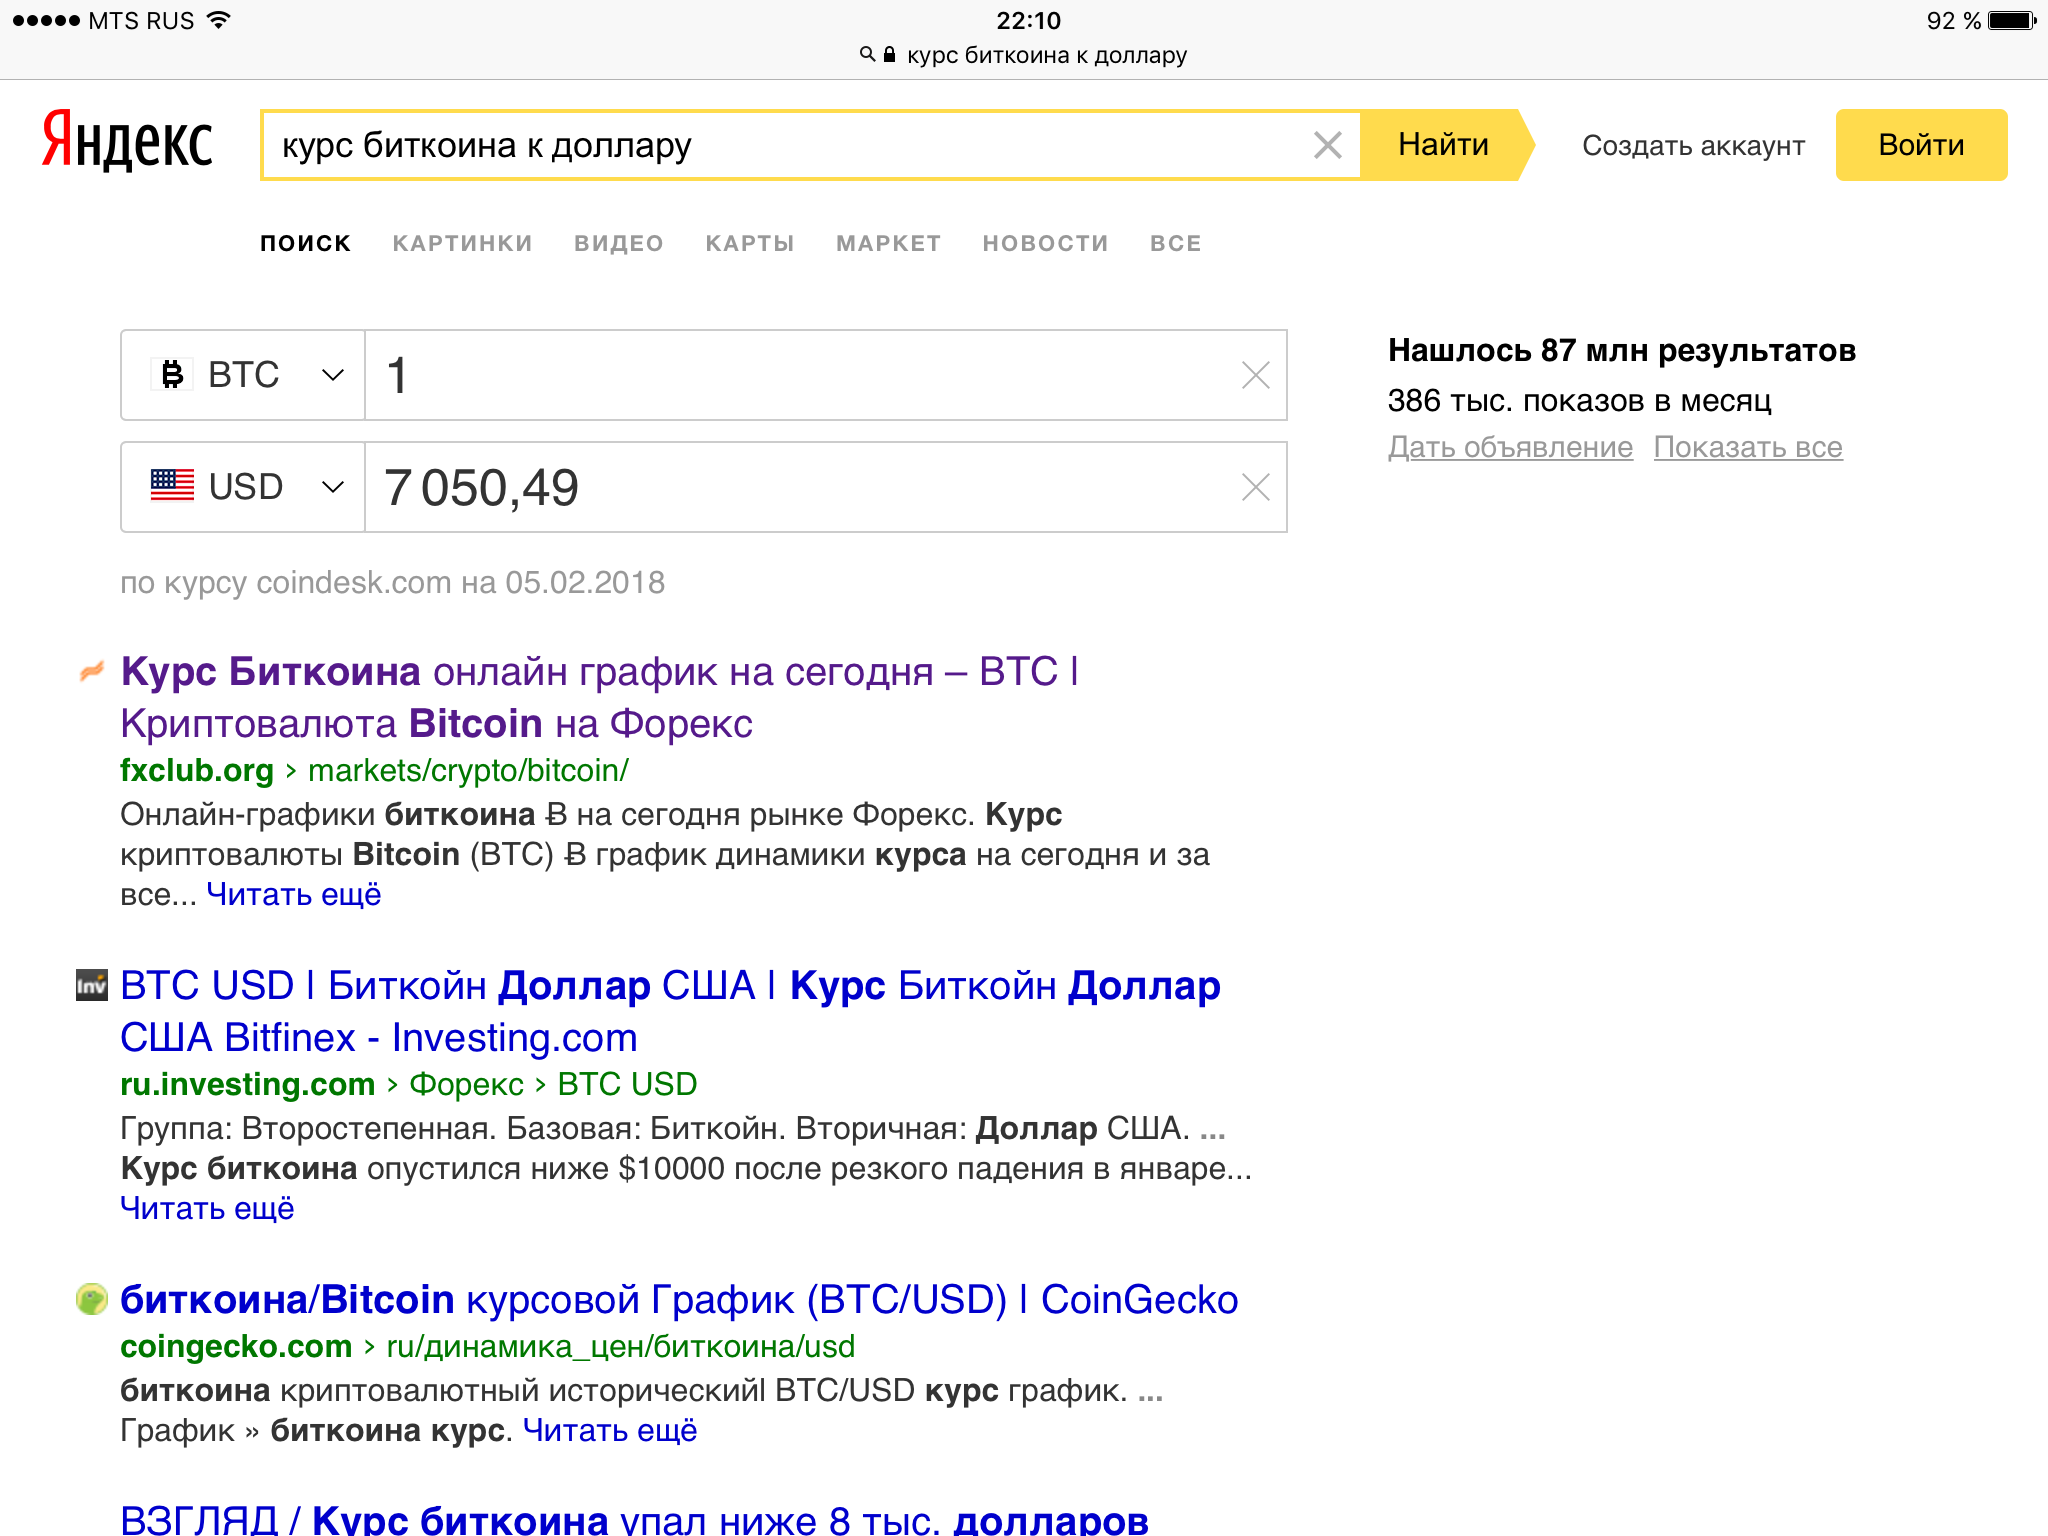 Поиск по картинке. Поиск по картинке Яндекс. Искать по изображению в Яндексе. Найти по картинке в Яндексе. Ищу в Яндексе.